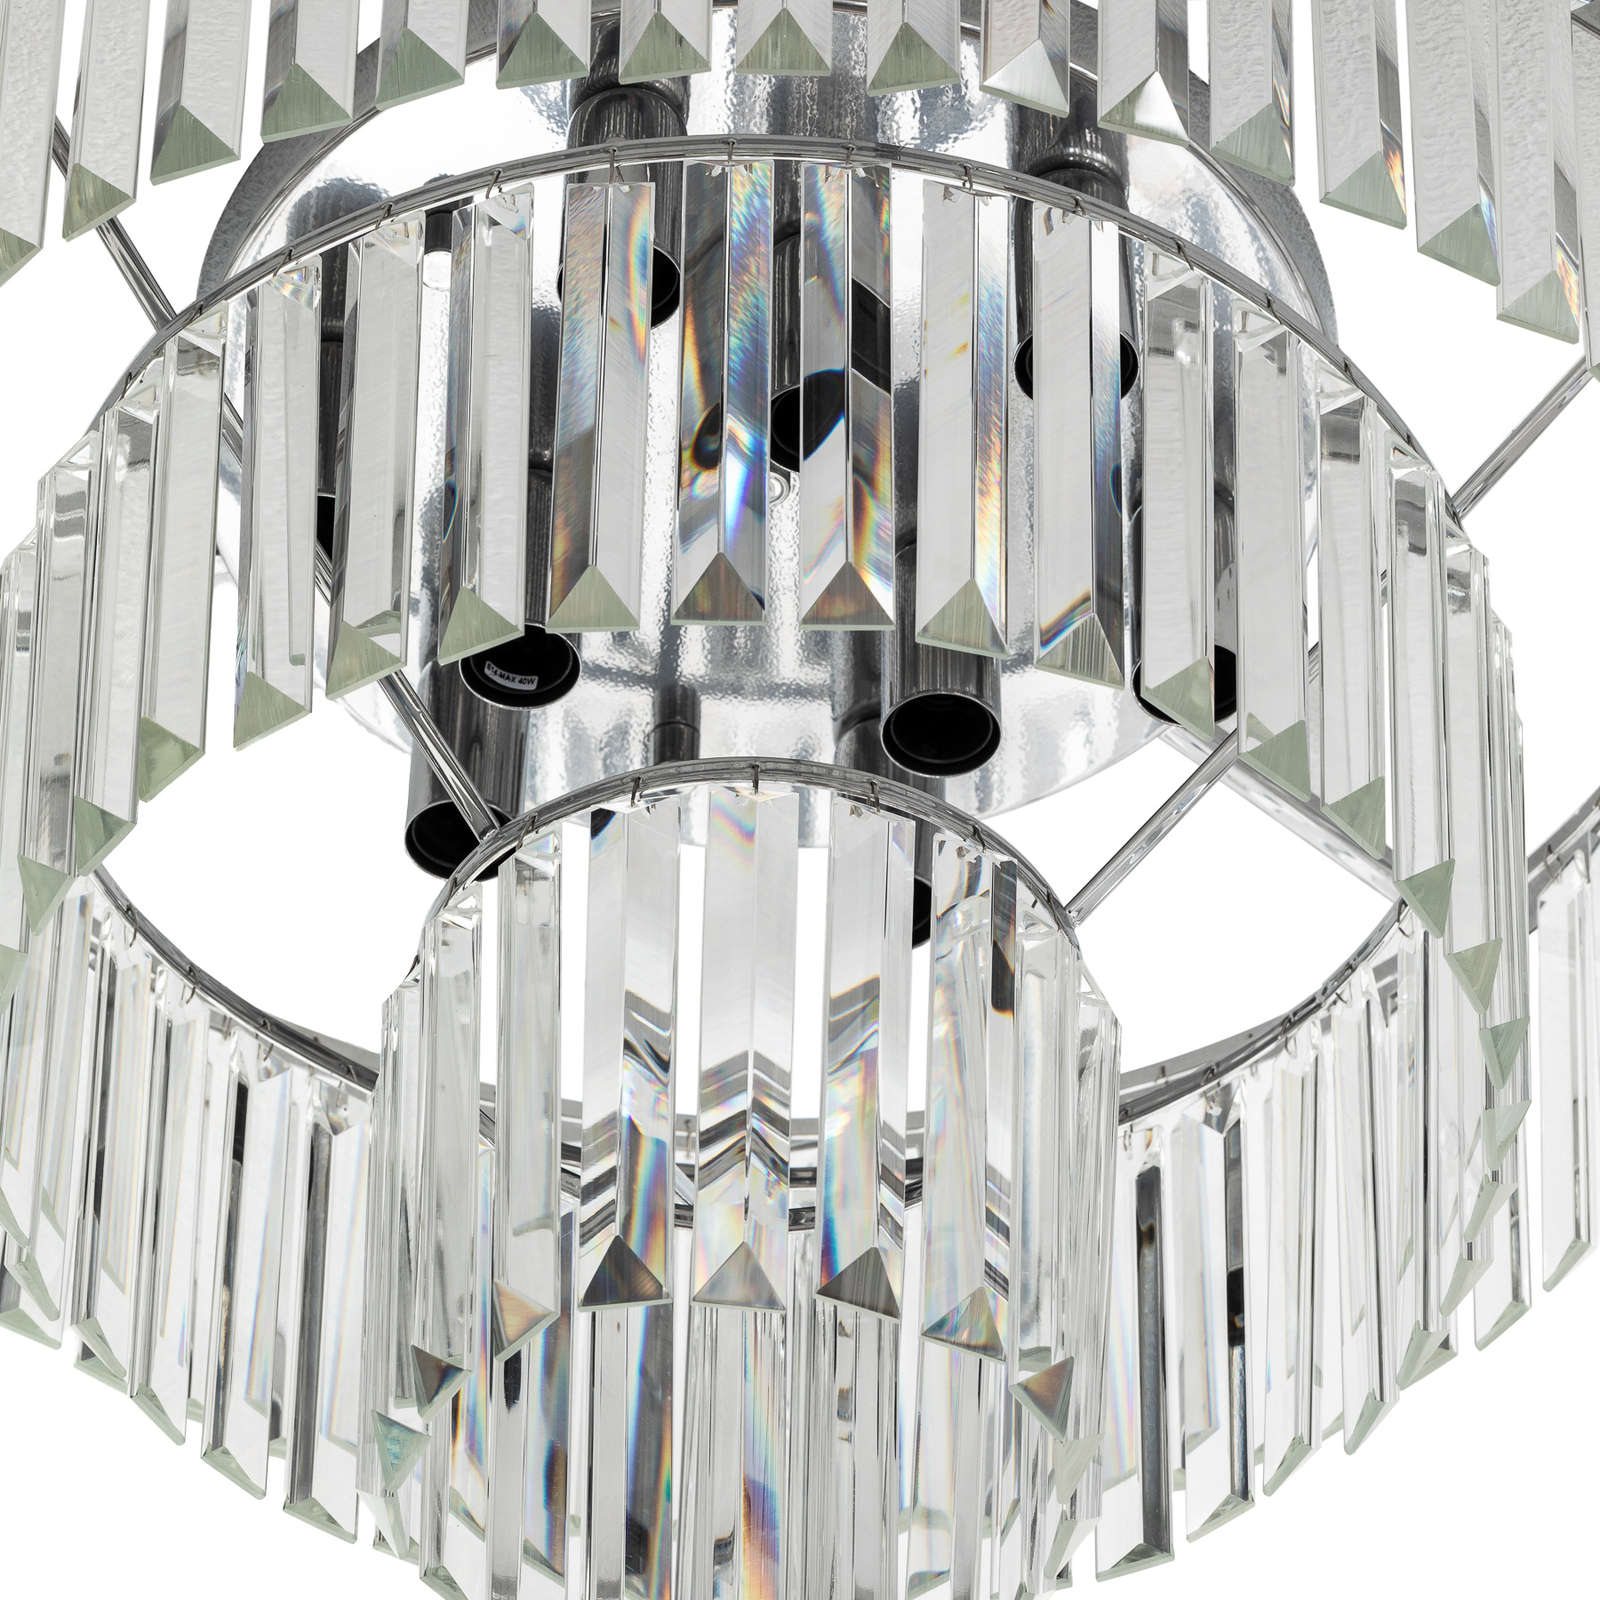 Cristal loftslampe, transparent/sølv, Ø 56cm